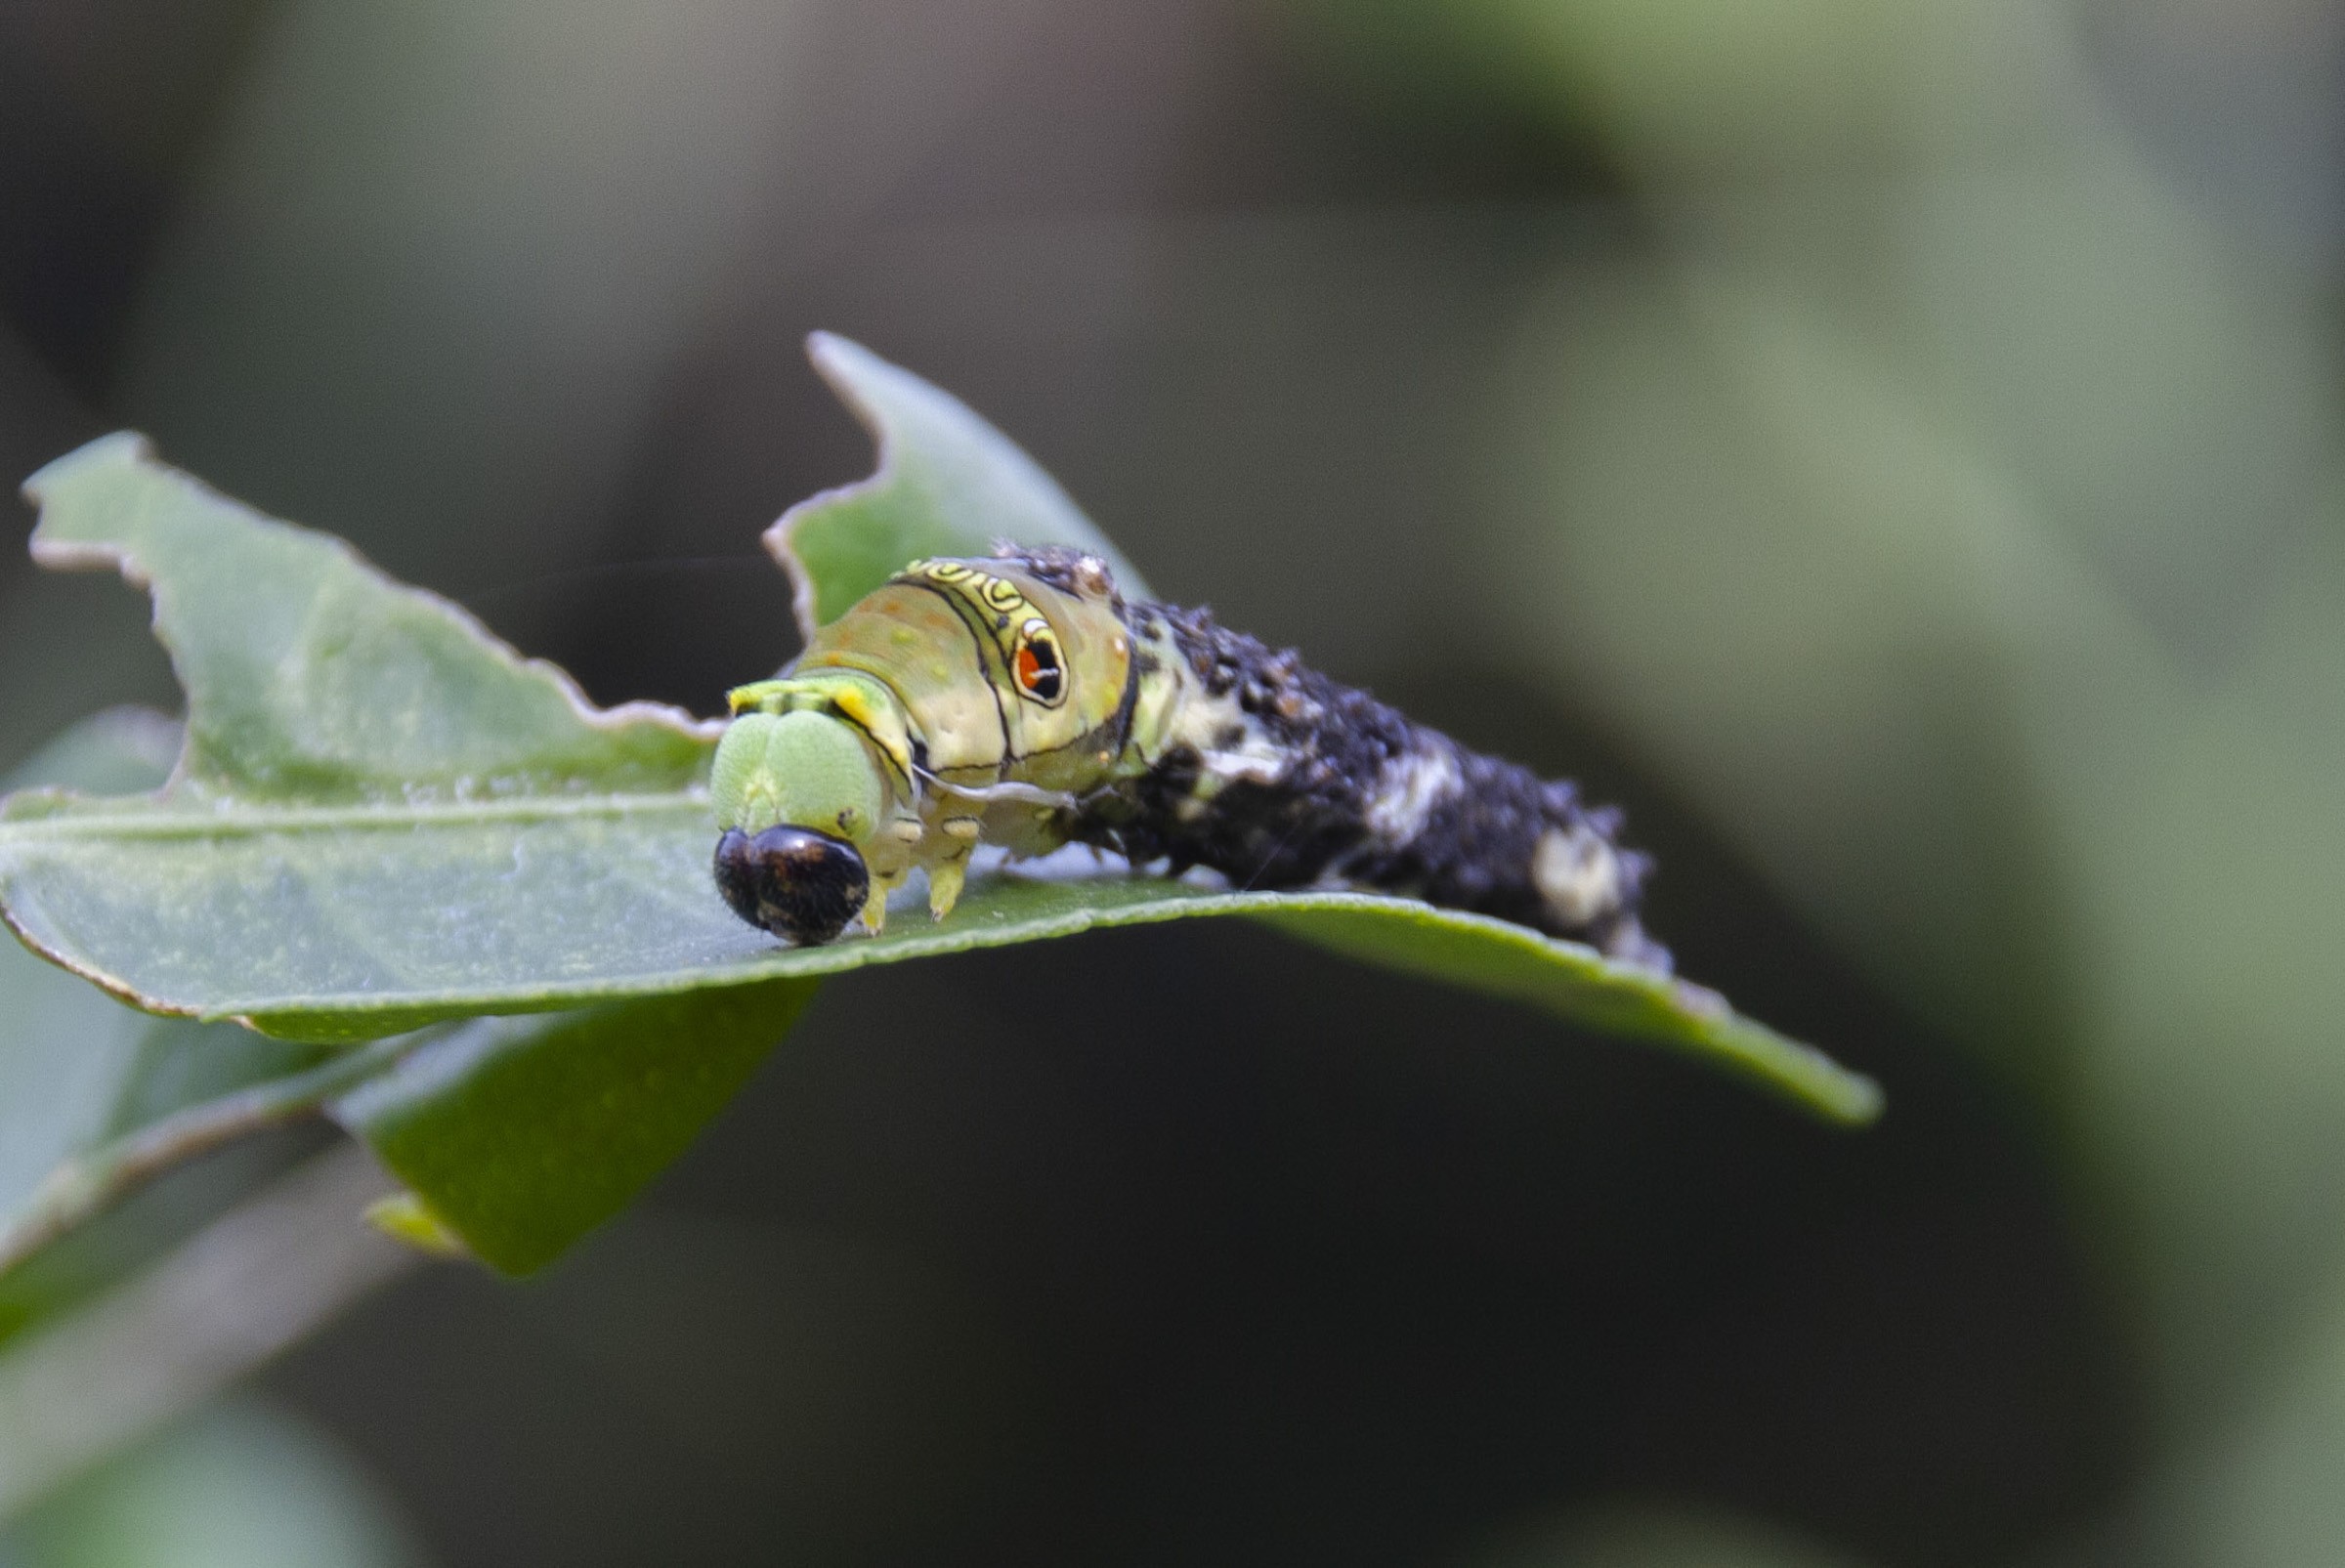 ナミアゲハの脱皮シーン 黒の4齢から緑の5齢幼虫へ フリー写真有 イメージガレージ